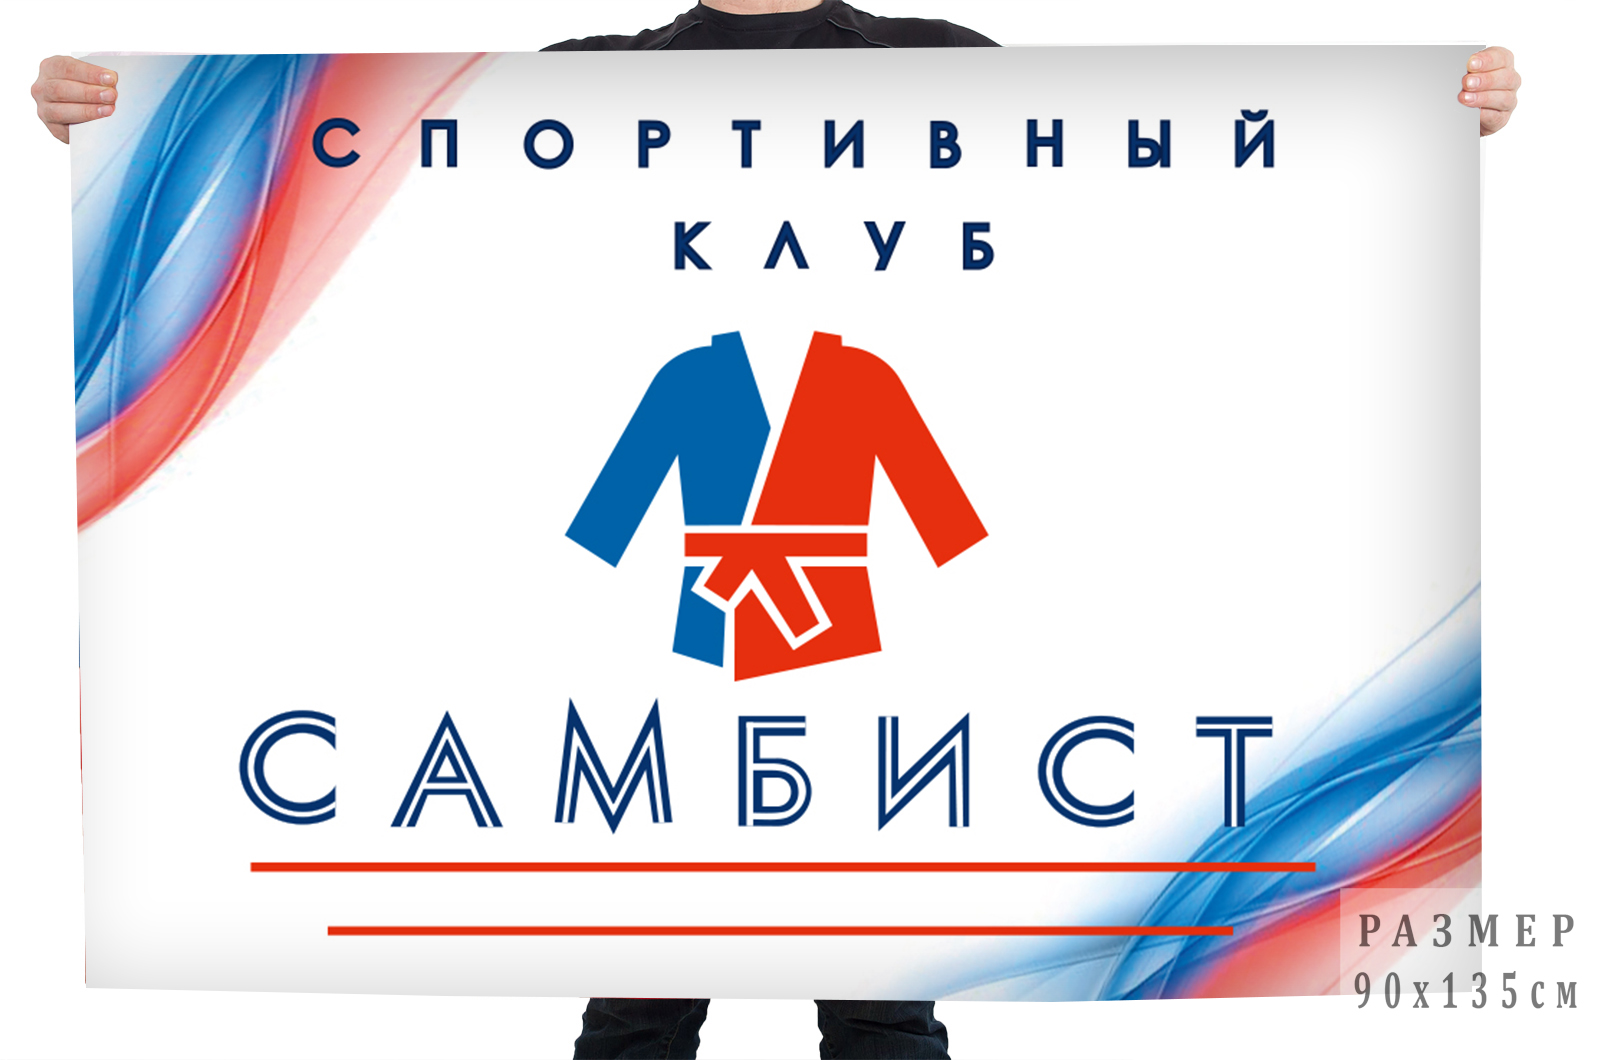 Купить флаг спортивного клуба "Самбист"